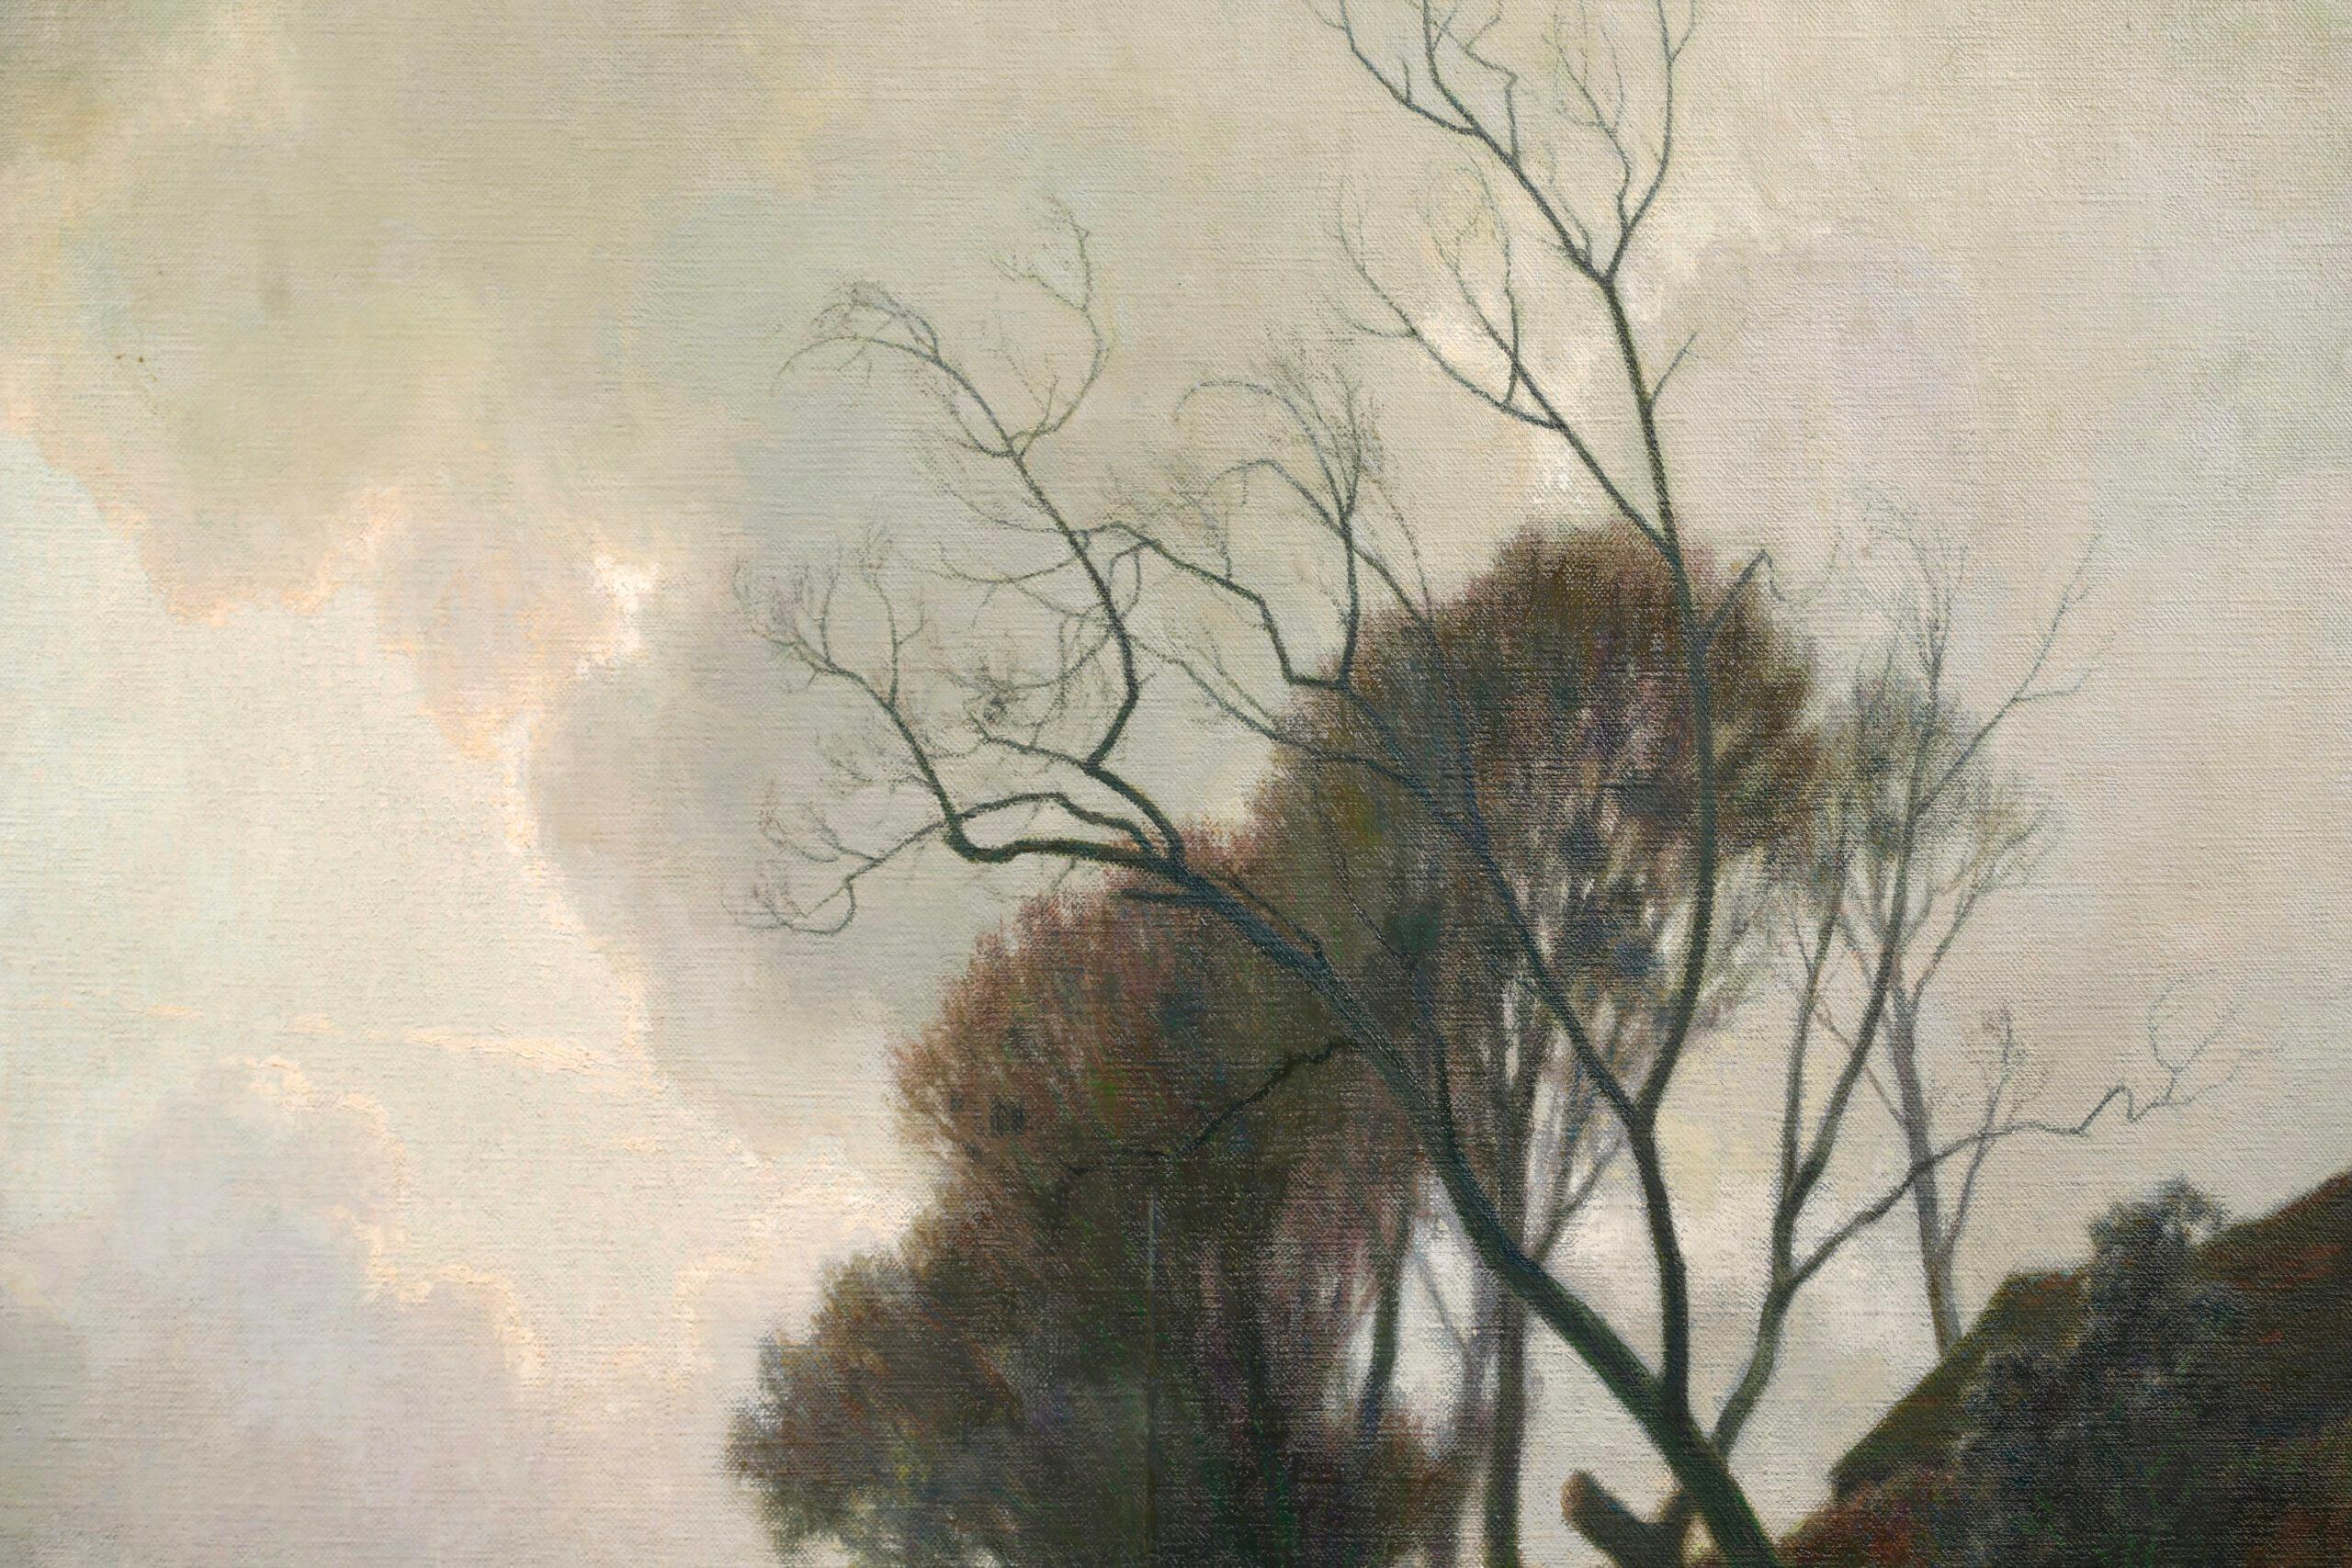 Eine gute Größe signiert Öl auf Leinwand Landschaft circa 1930 von beliebten Französisch impressionistischen Maler Alexandre Louis Jacob. Das Werk zeigt einen Blick auf die Seine. Die kalte Szene spielt im Februar. Ein kleines Dampfboot und ein